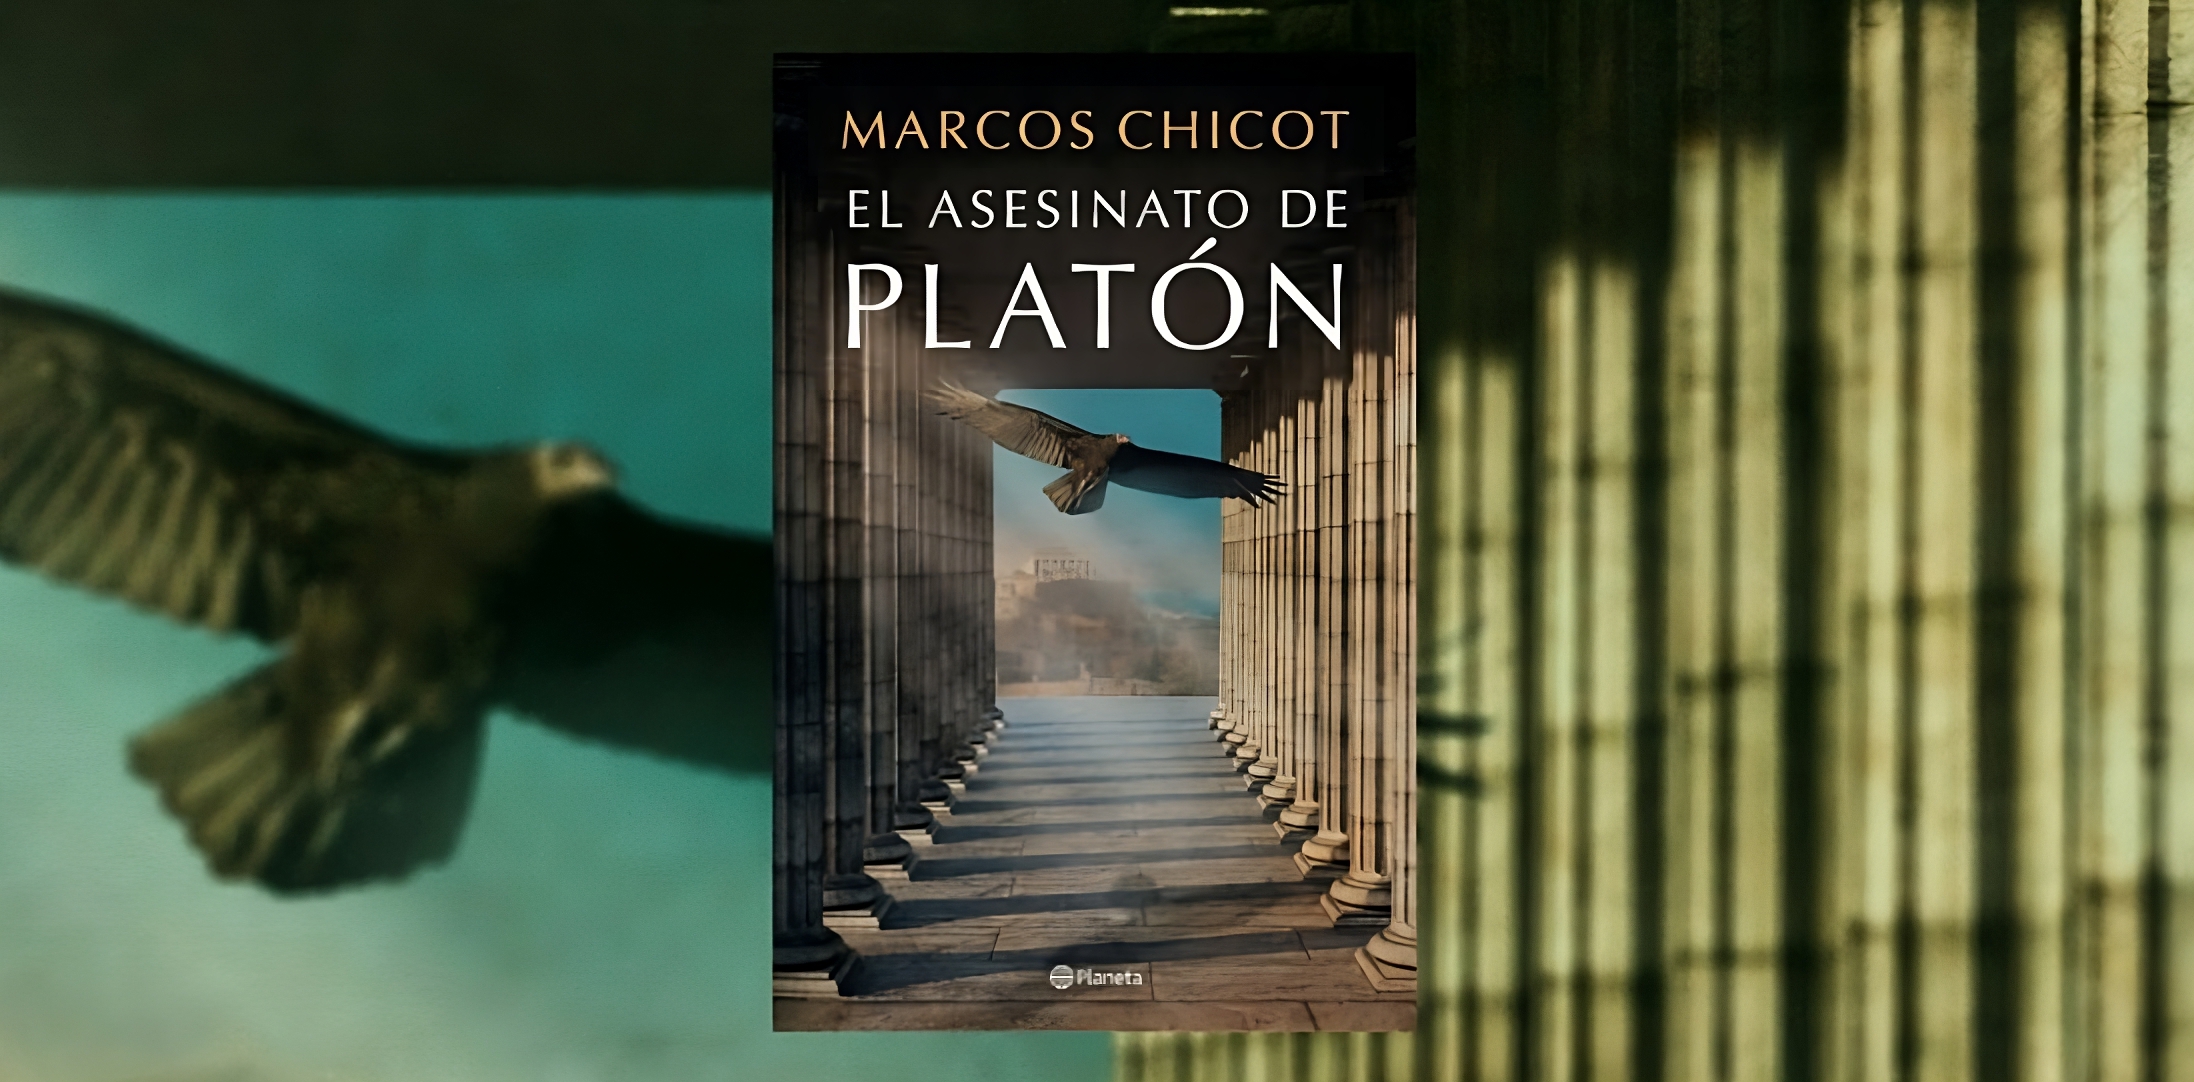 Portada del libro "El asesinato de Platón", de Marcos Chicot. (Planeta de Libros).